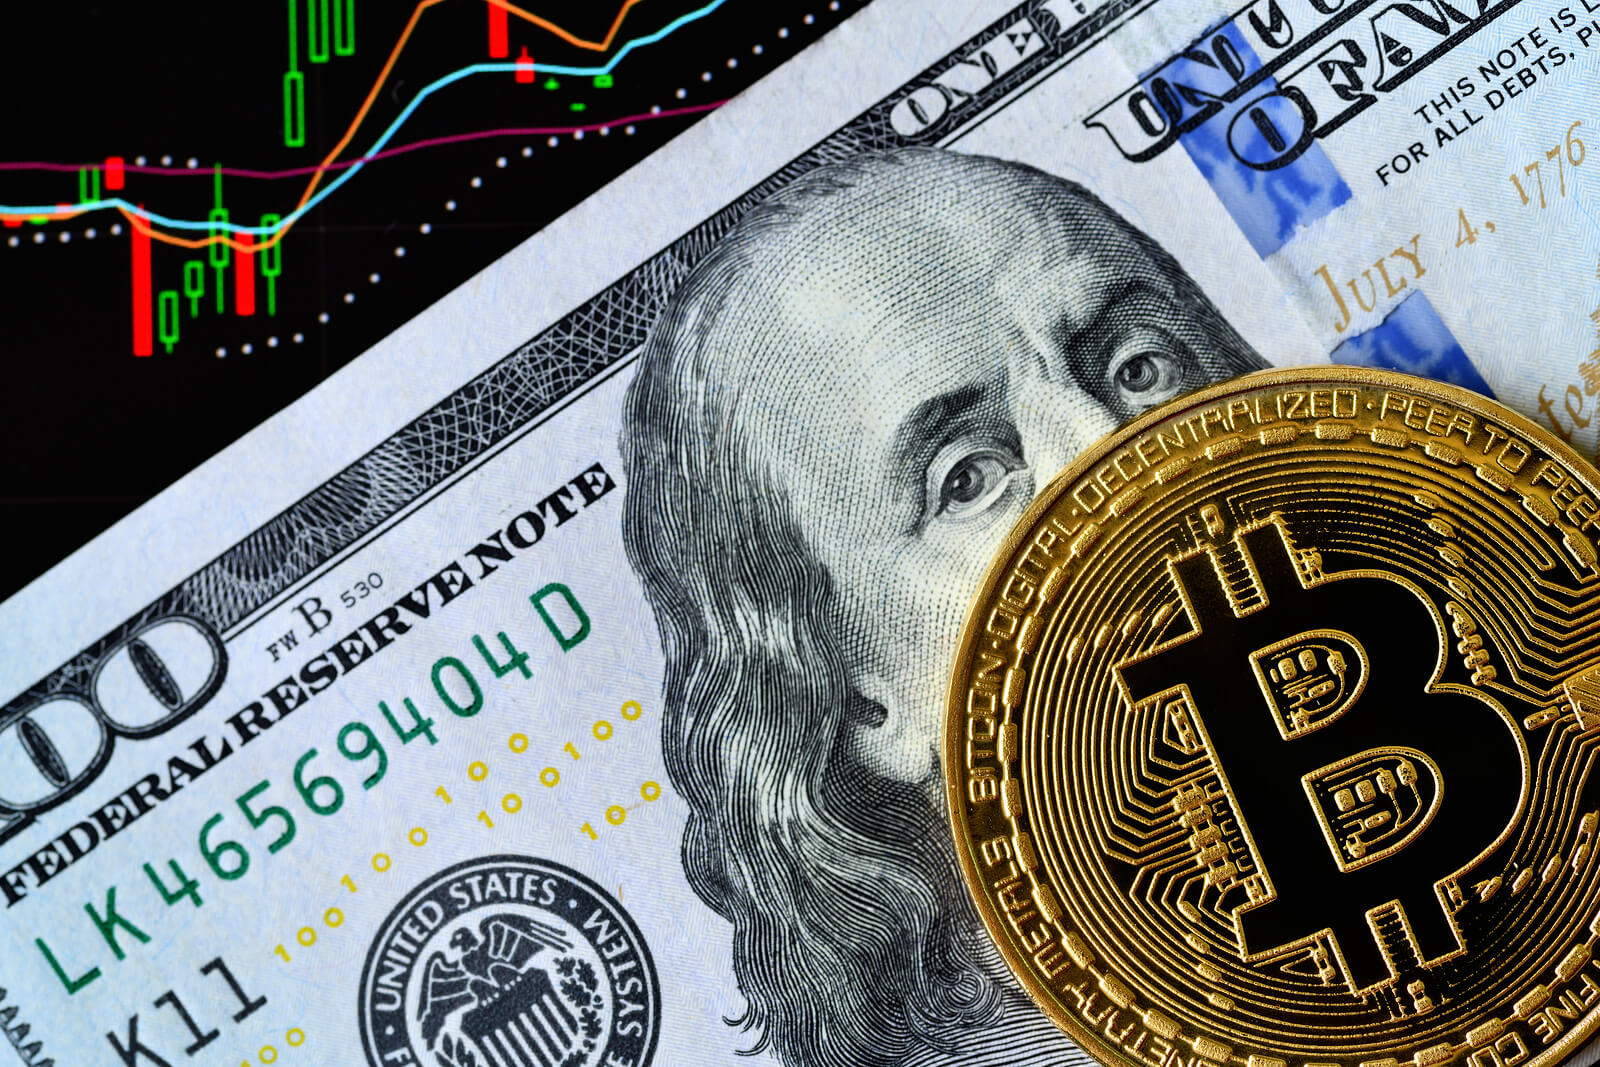 500 dollars in bitcoin in 2012